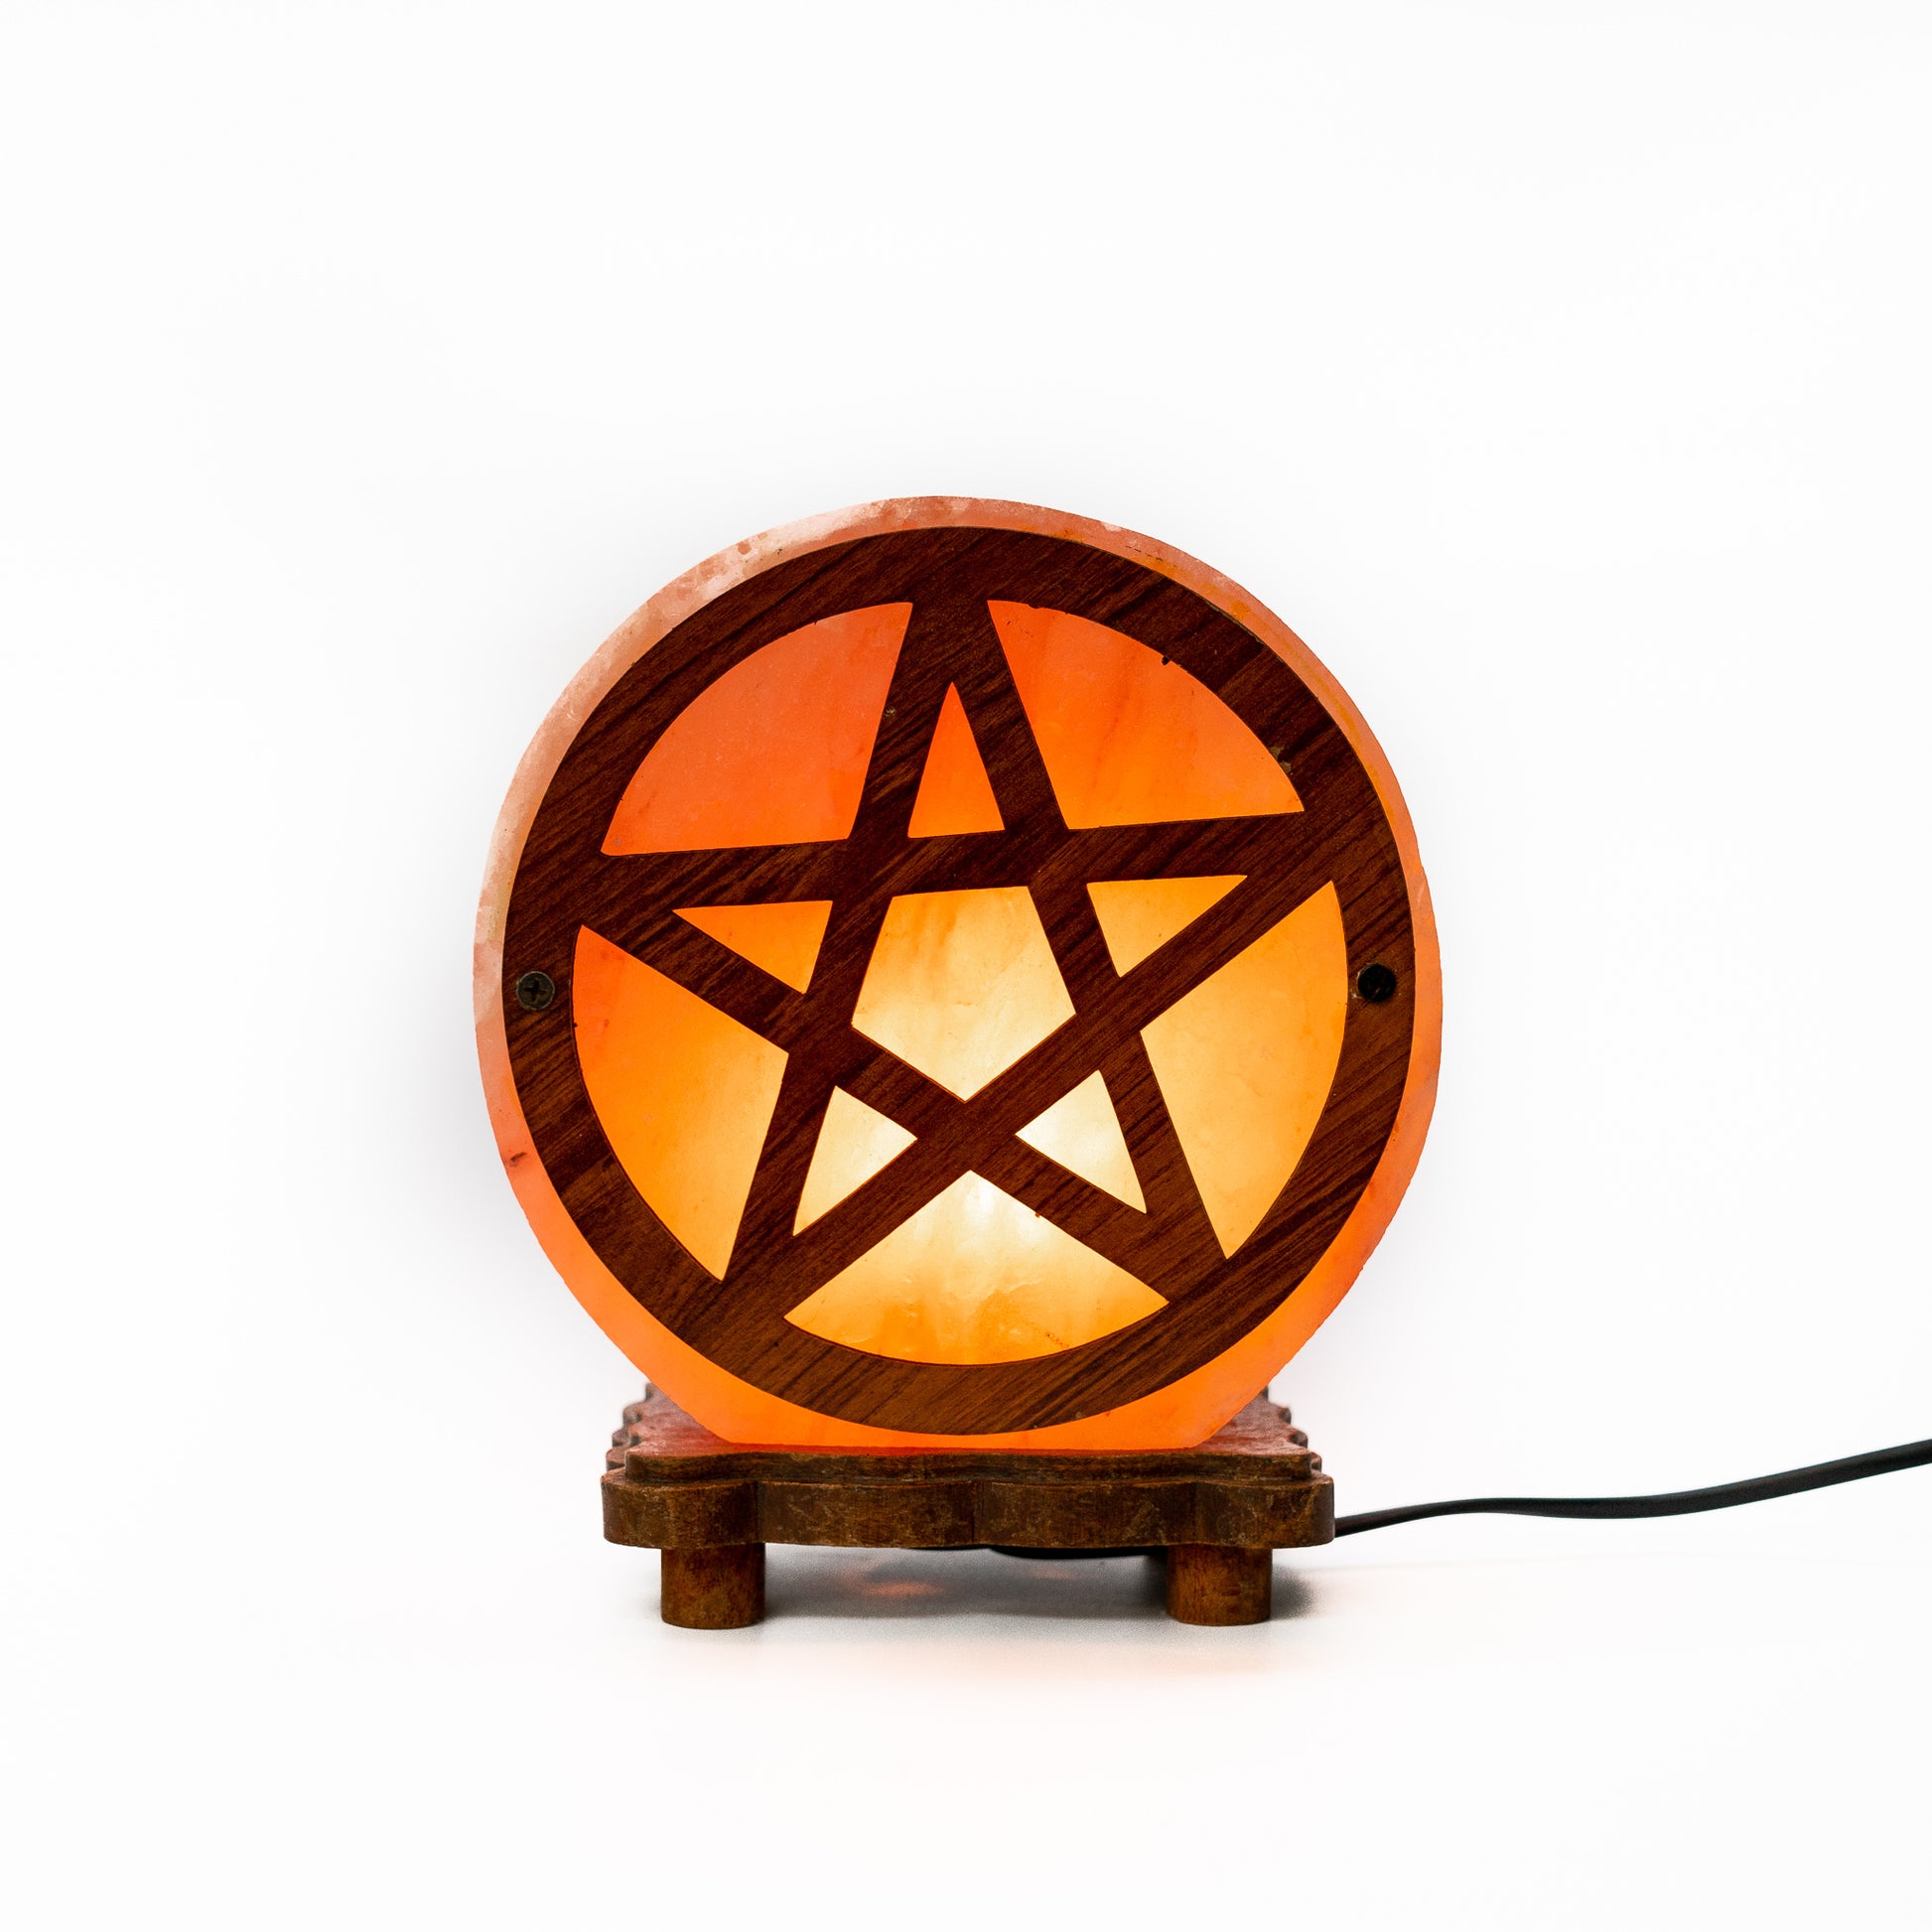 Salt lamp with pentagram wooden carving (pink)